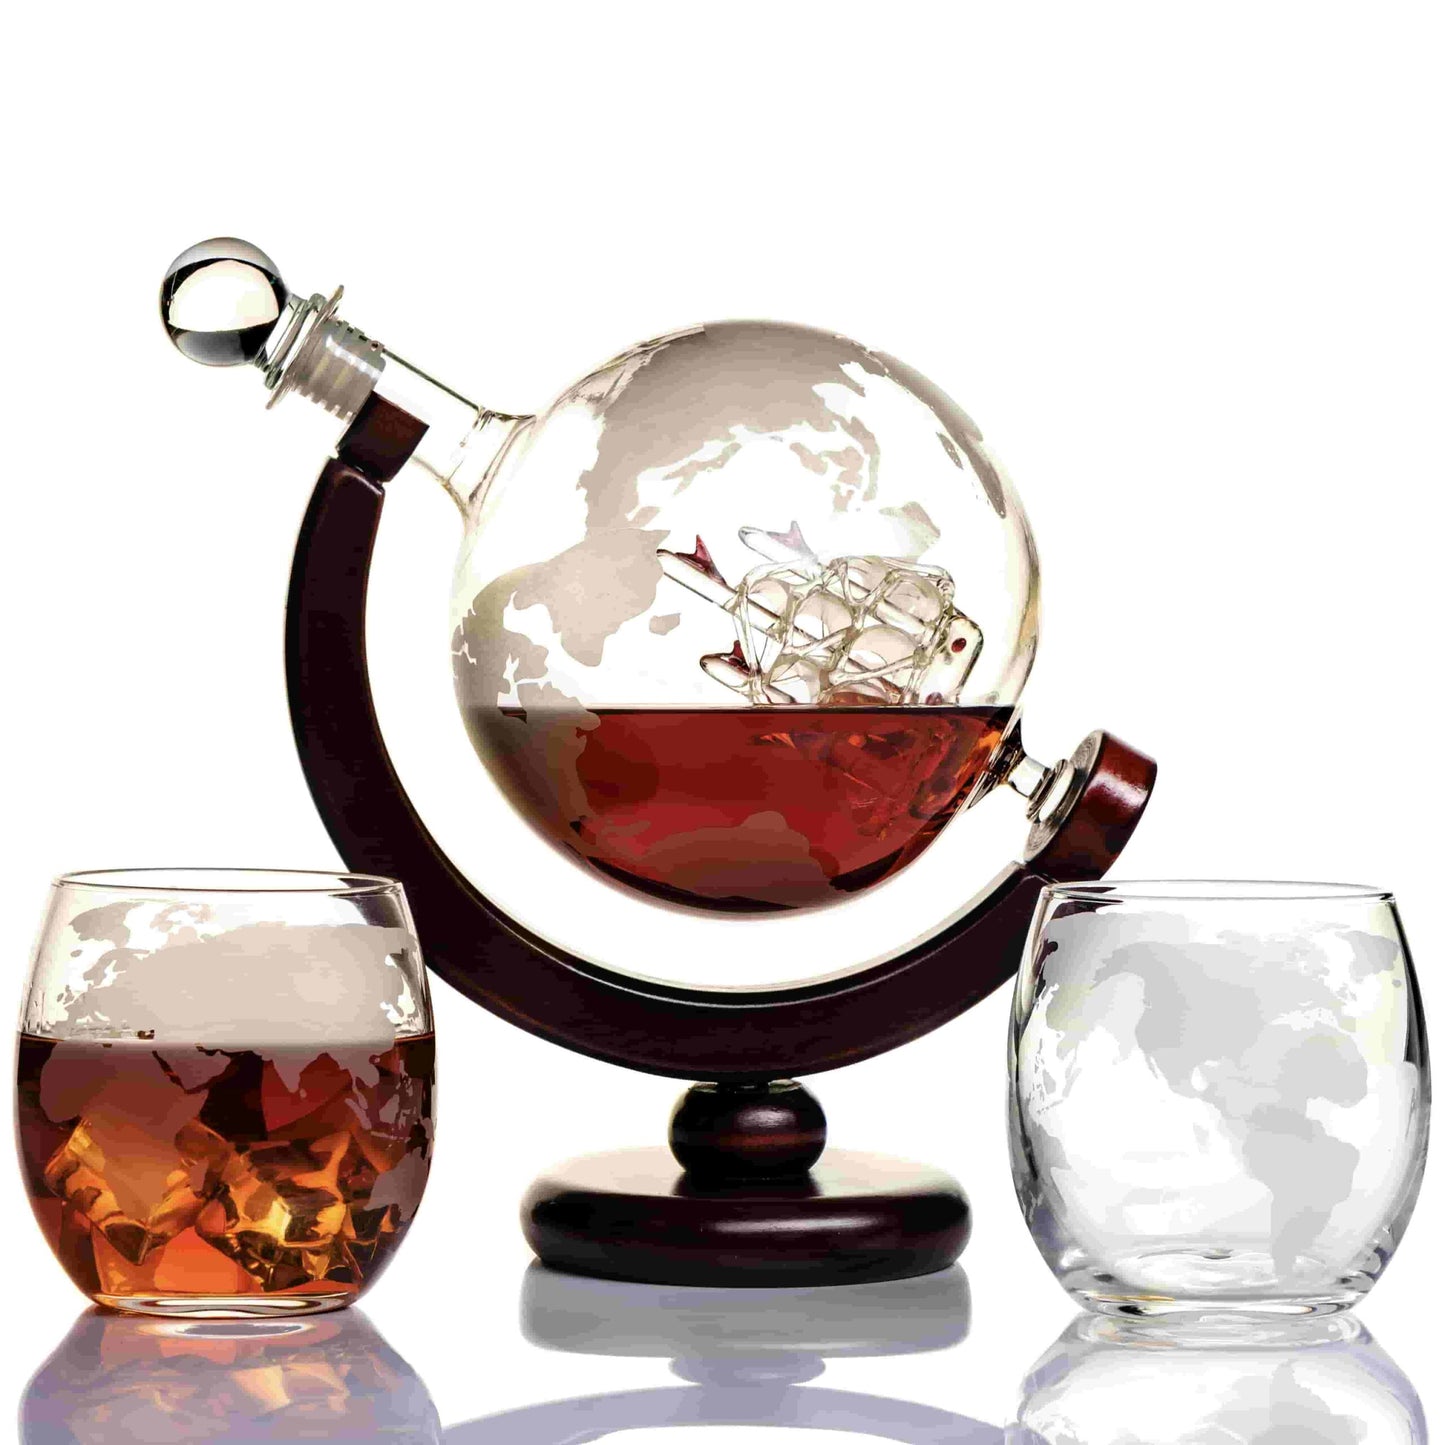 Globe Whiskey Decanter Gift Set Handmade Home Bar Decor Airtight Liquor Dispense Gift for Men Dad Boyfriend Husband 850 ML